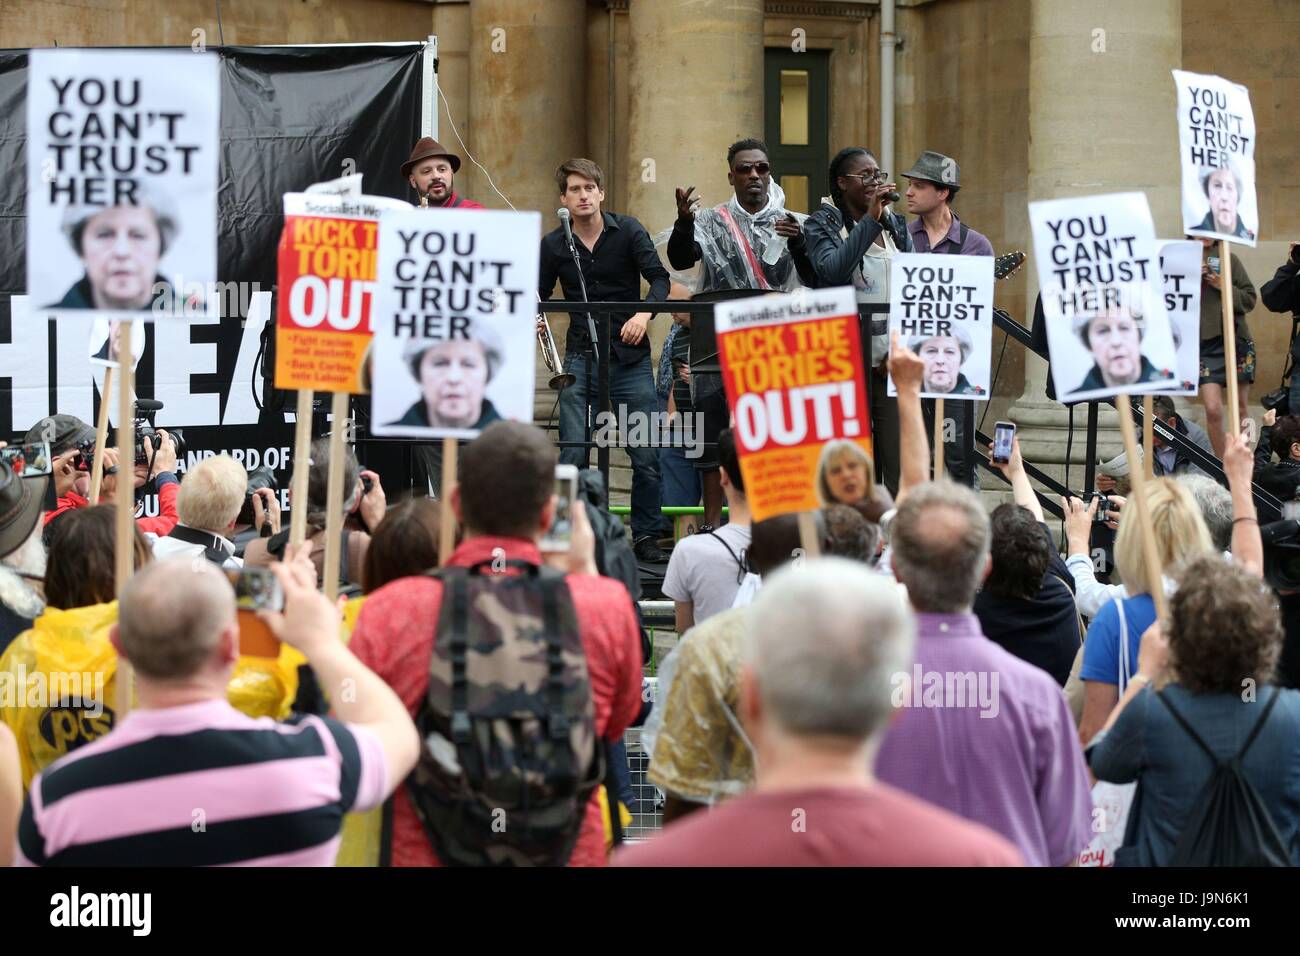 Captain Ska realizar su canción mentiroso mentiroso GE2017 fuera de la BBC Broadcasting House en Londres, donde la gente está protestando por Radio 1's negativa a reproducir la canción. Foto de stock